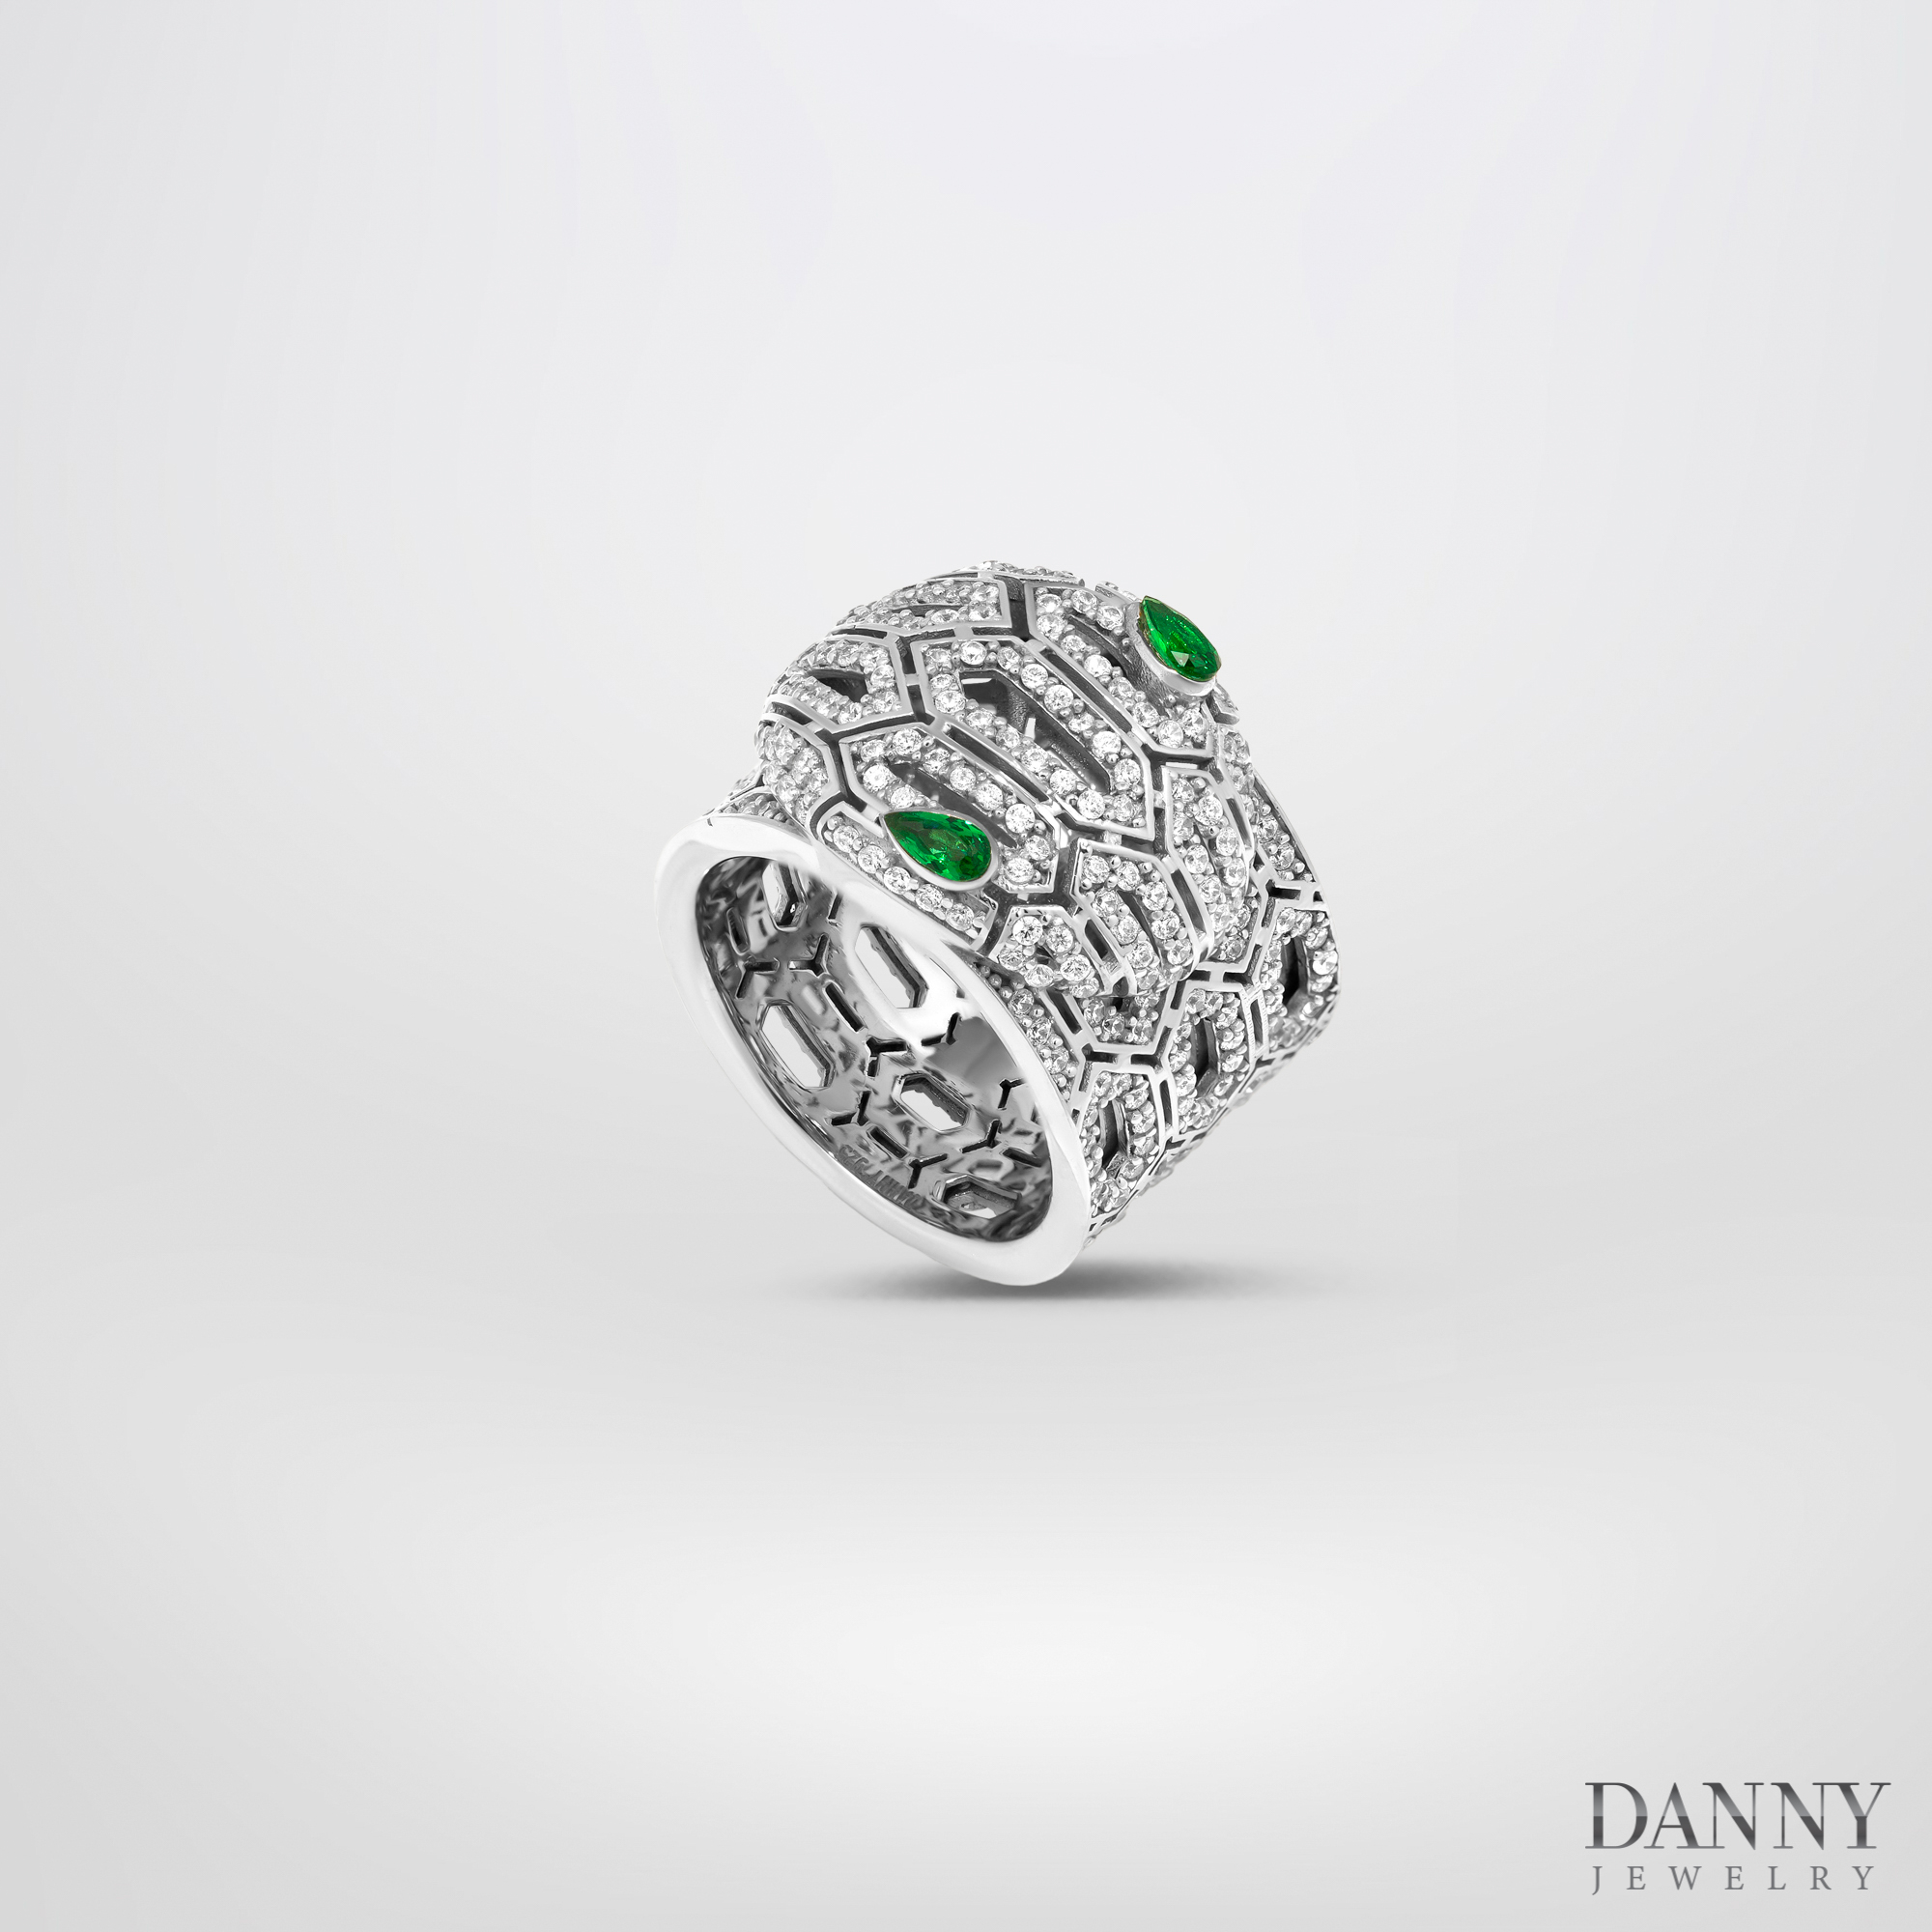 Hình ảnh Nhẫn Danny Jewelry Bạc Thổ Nhĩ Kỳ Xi Rhodium Đính Đá CZ & Đá Zircon Biểu Tượng Rắn N0003TNK